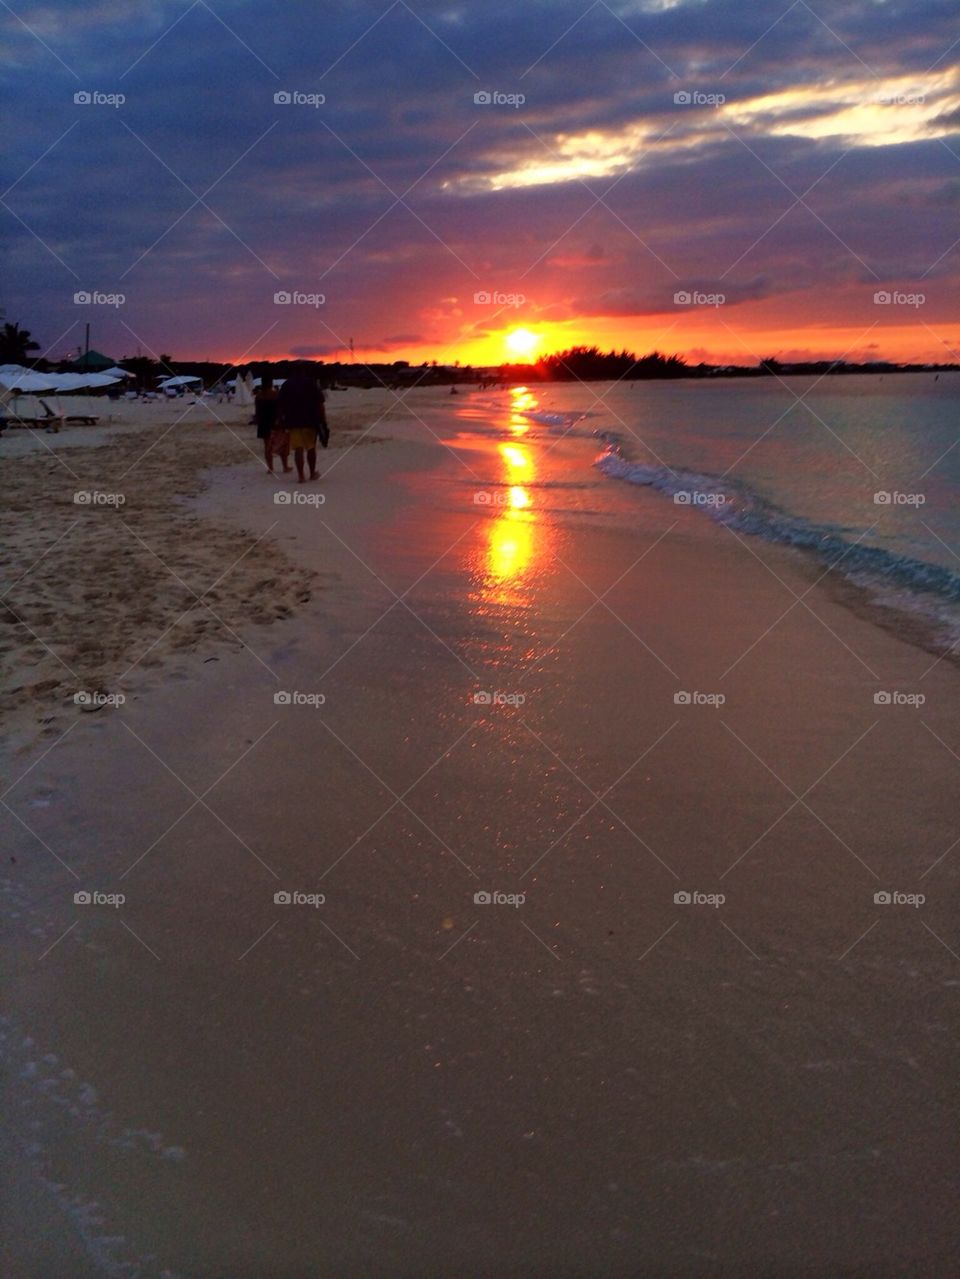 Sunset in Caicos